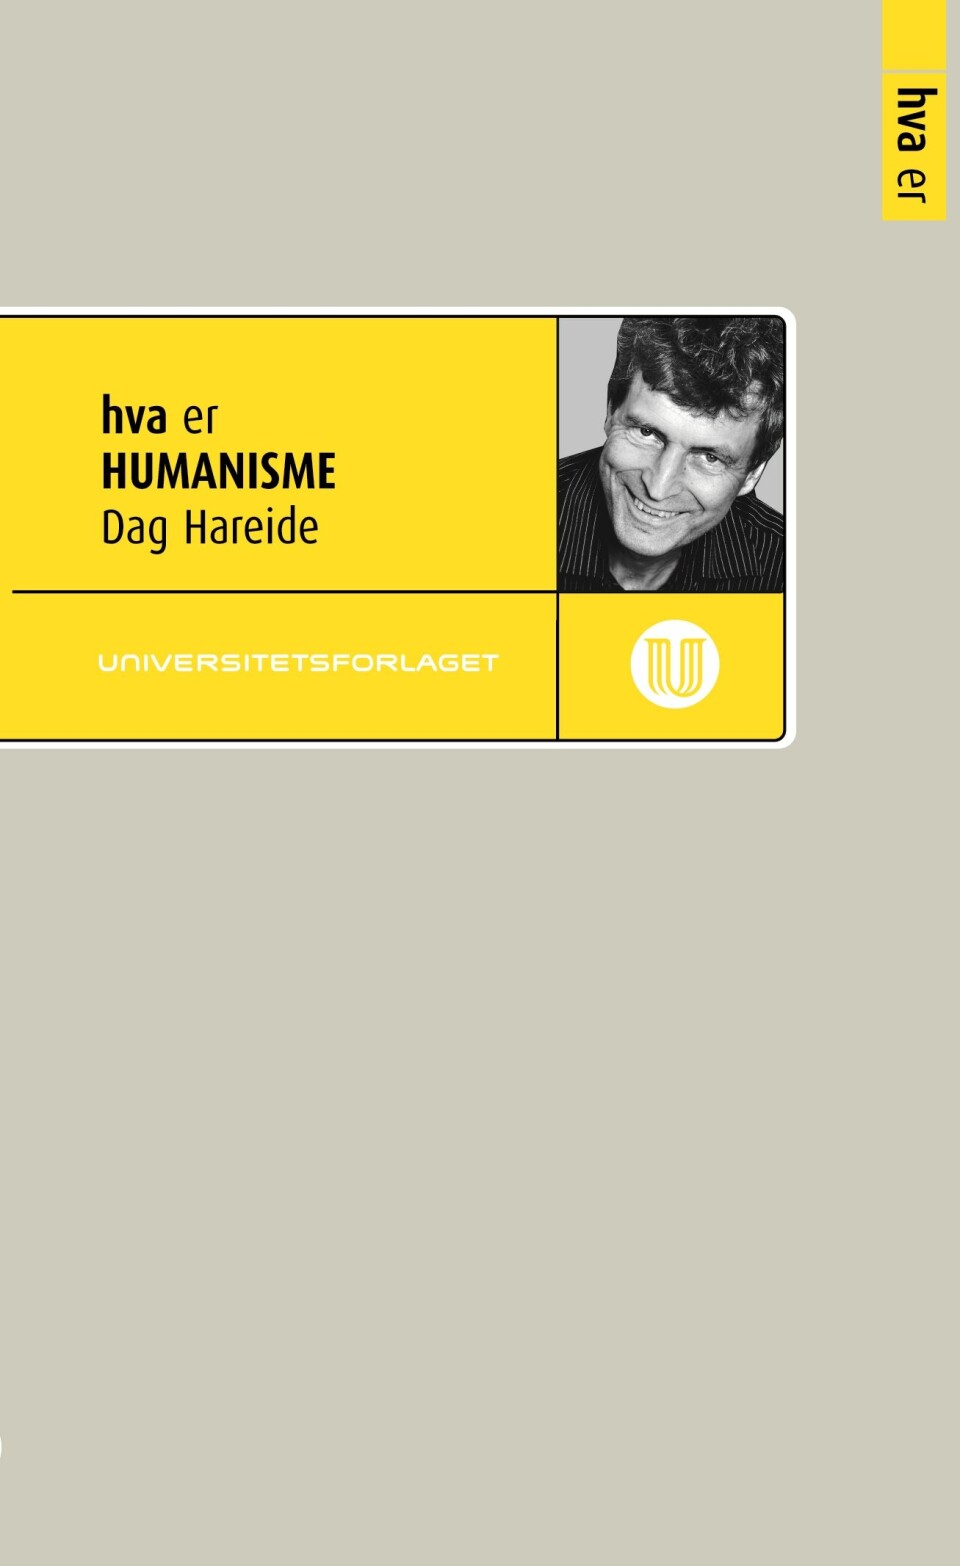 Dag Hareide har skrevet boken Hva er humanisme.